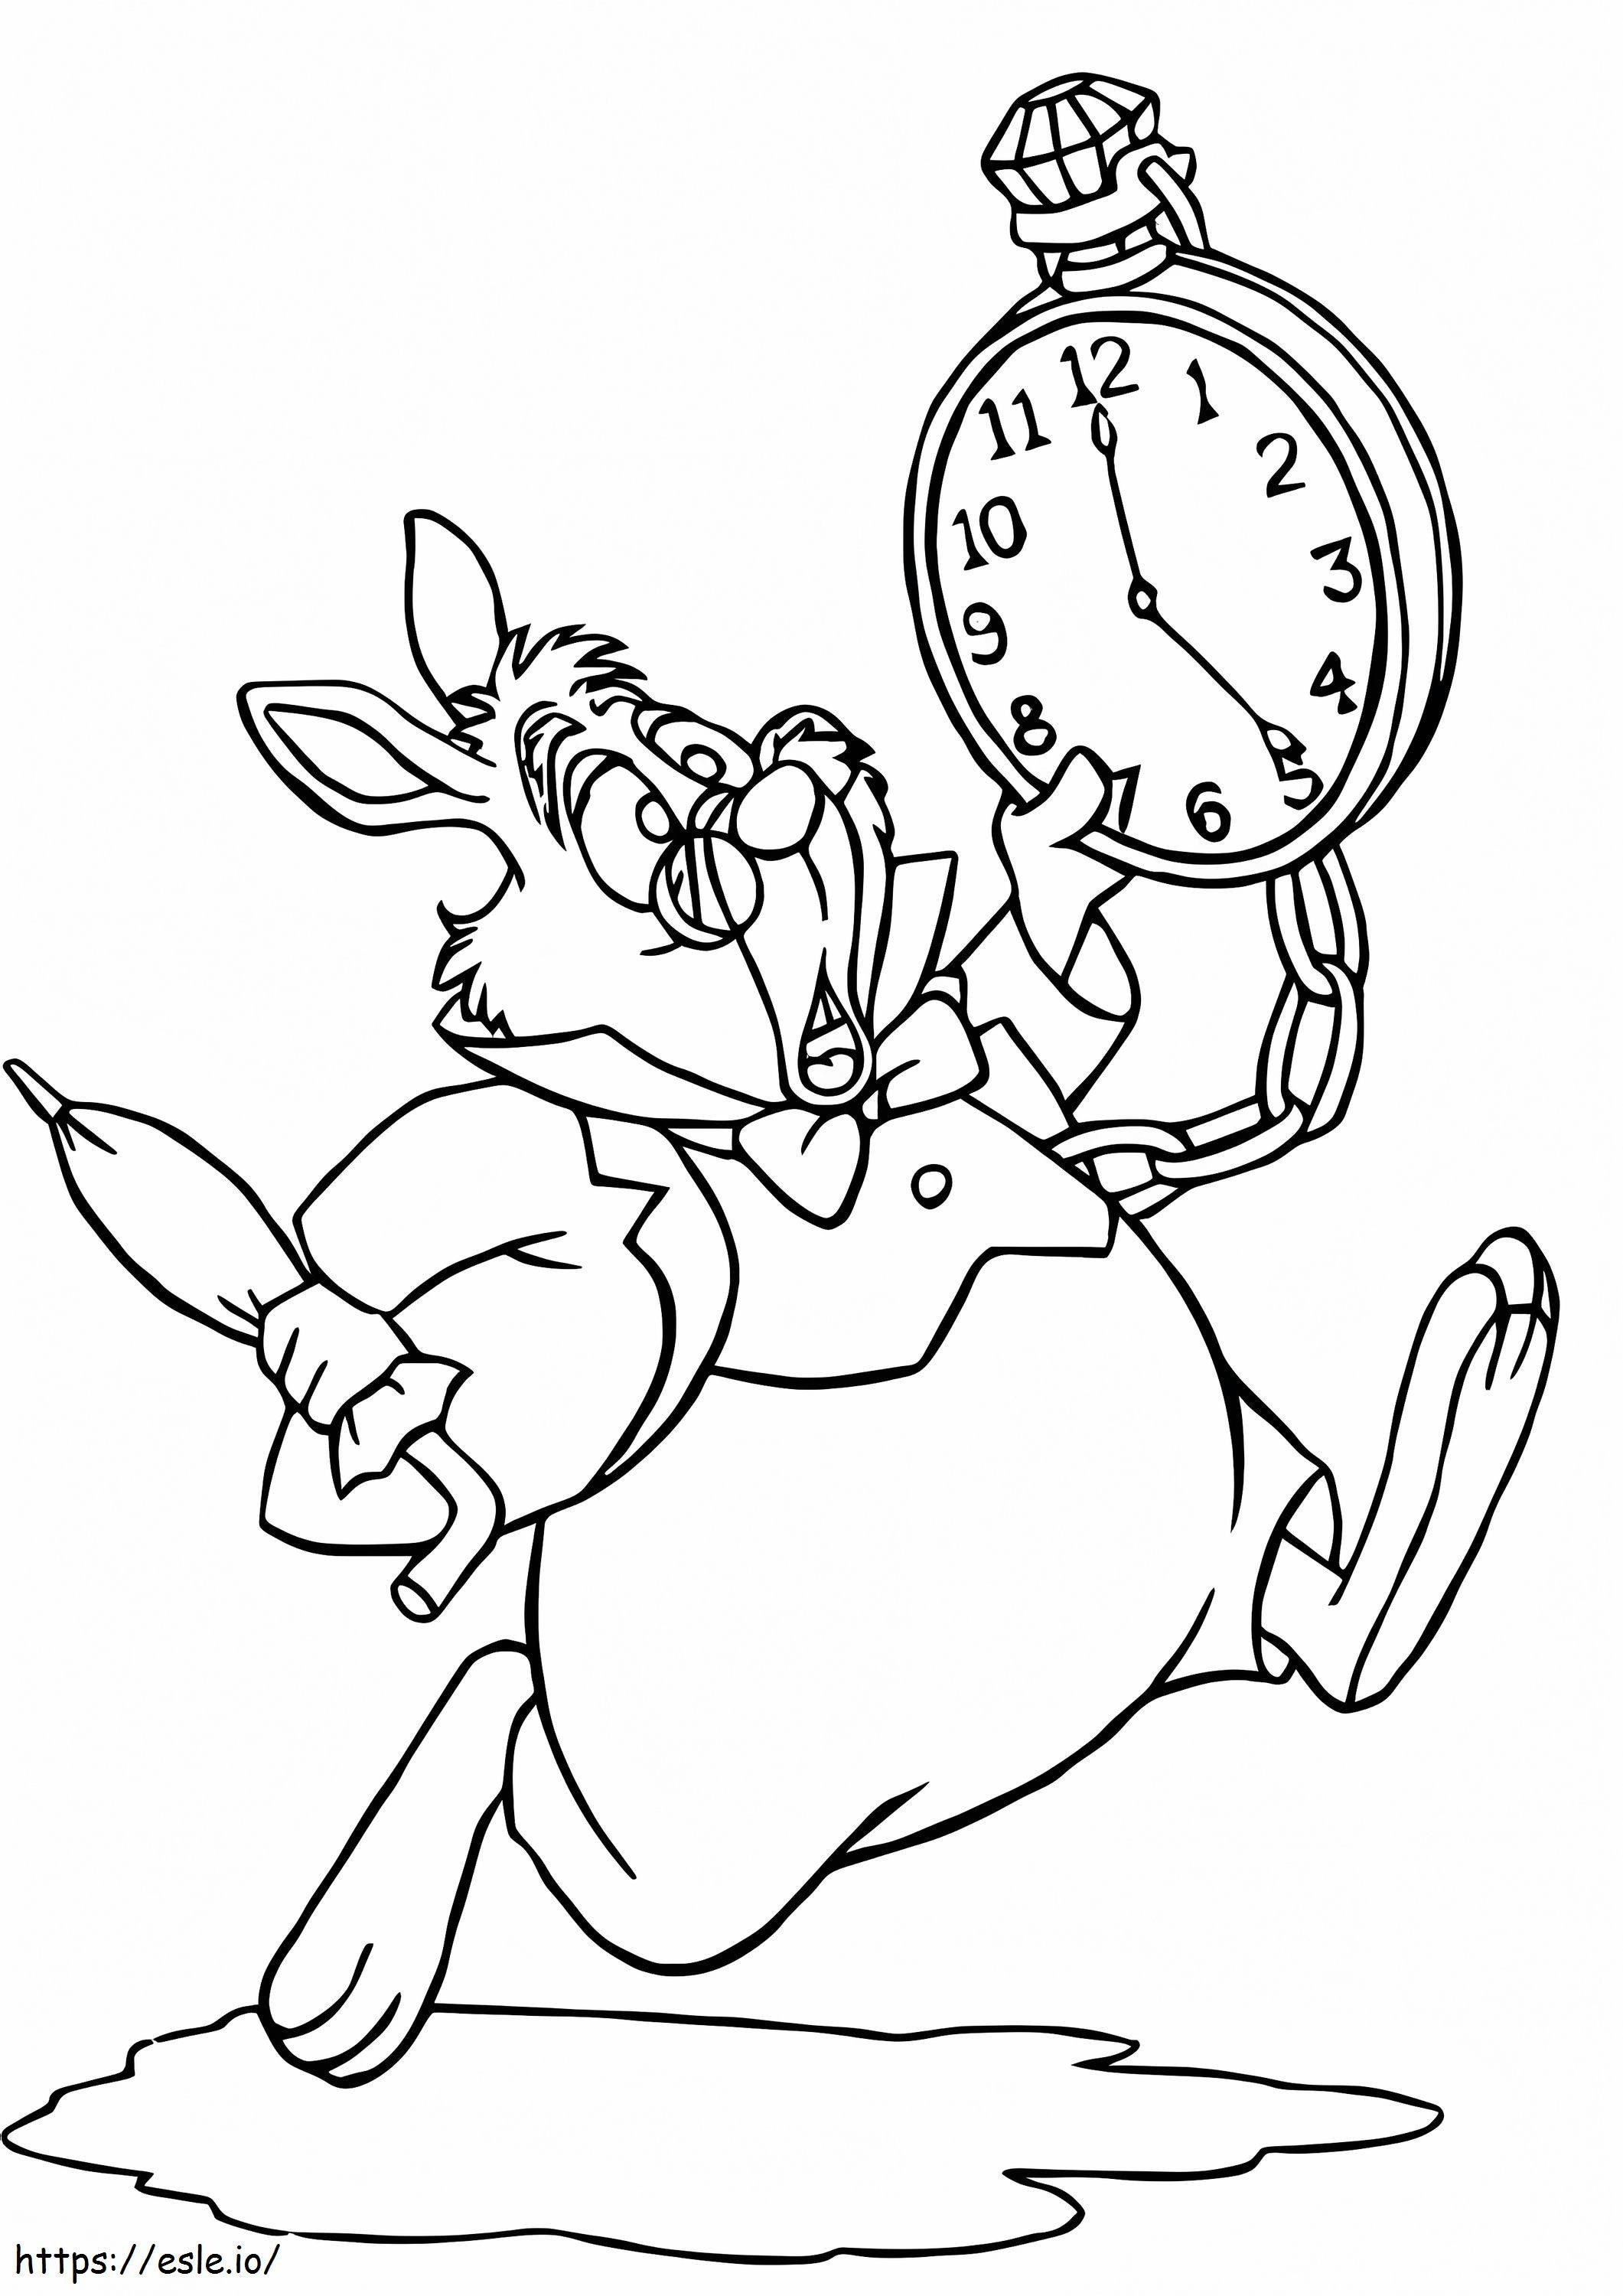 Cartoon-Kaninchen hält Uhr ausmalbilder